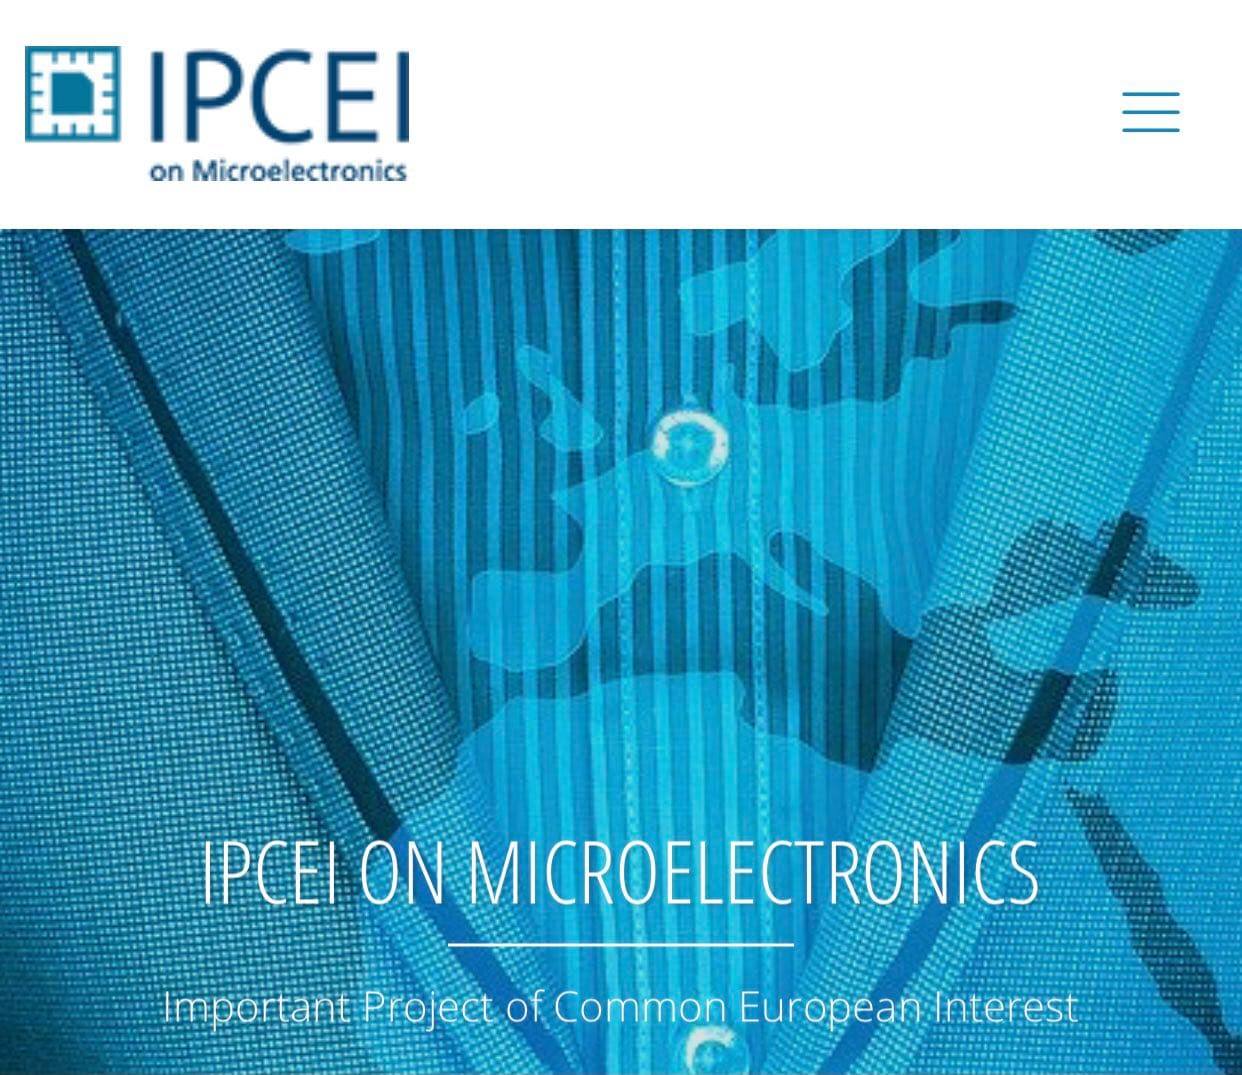 Συμμετοχή ελληνικών επιχειρήσεων στο Σημαντικό Έργο Κοινού Ευρωπαϊκού Ενδιαφέροντος (Important Project of Common European Interest – IPCEI) στη βιομηχανική αλυσίδα αξίας «Μικροηλεκτρονική»